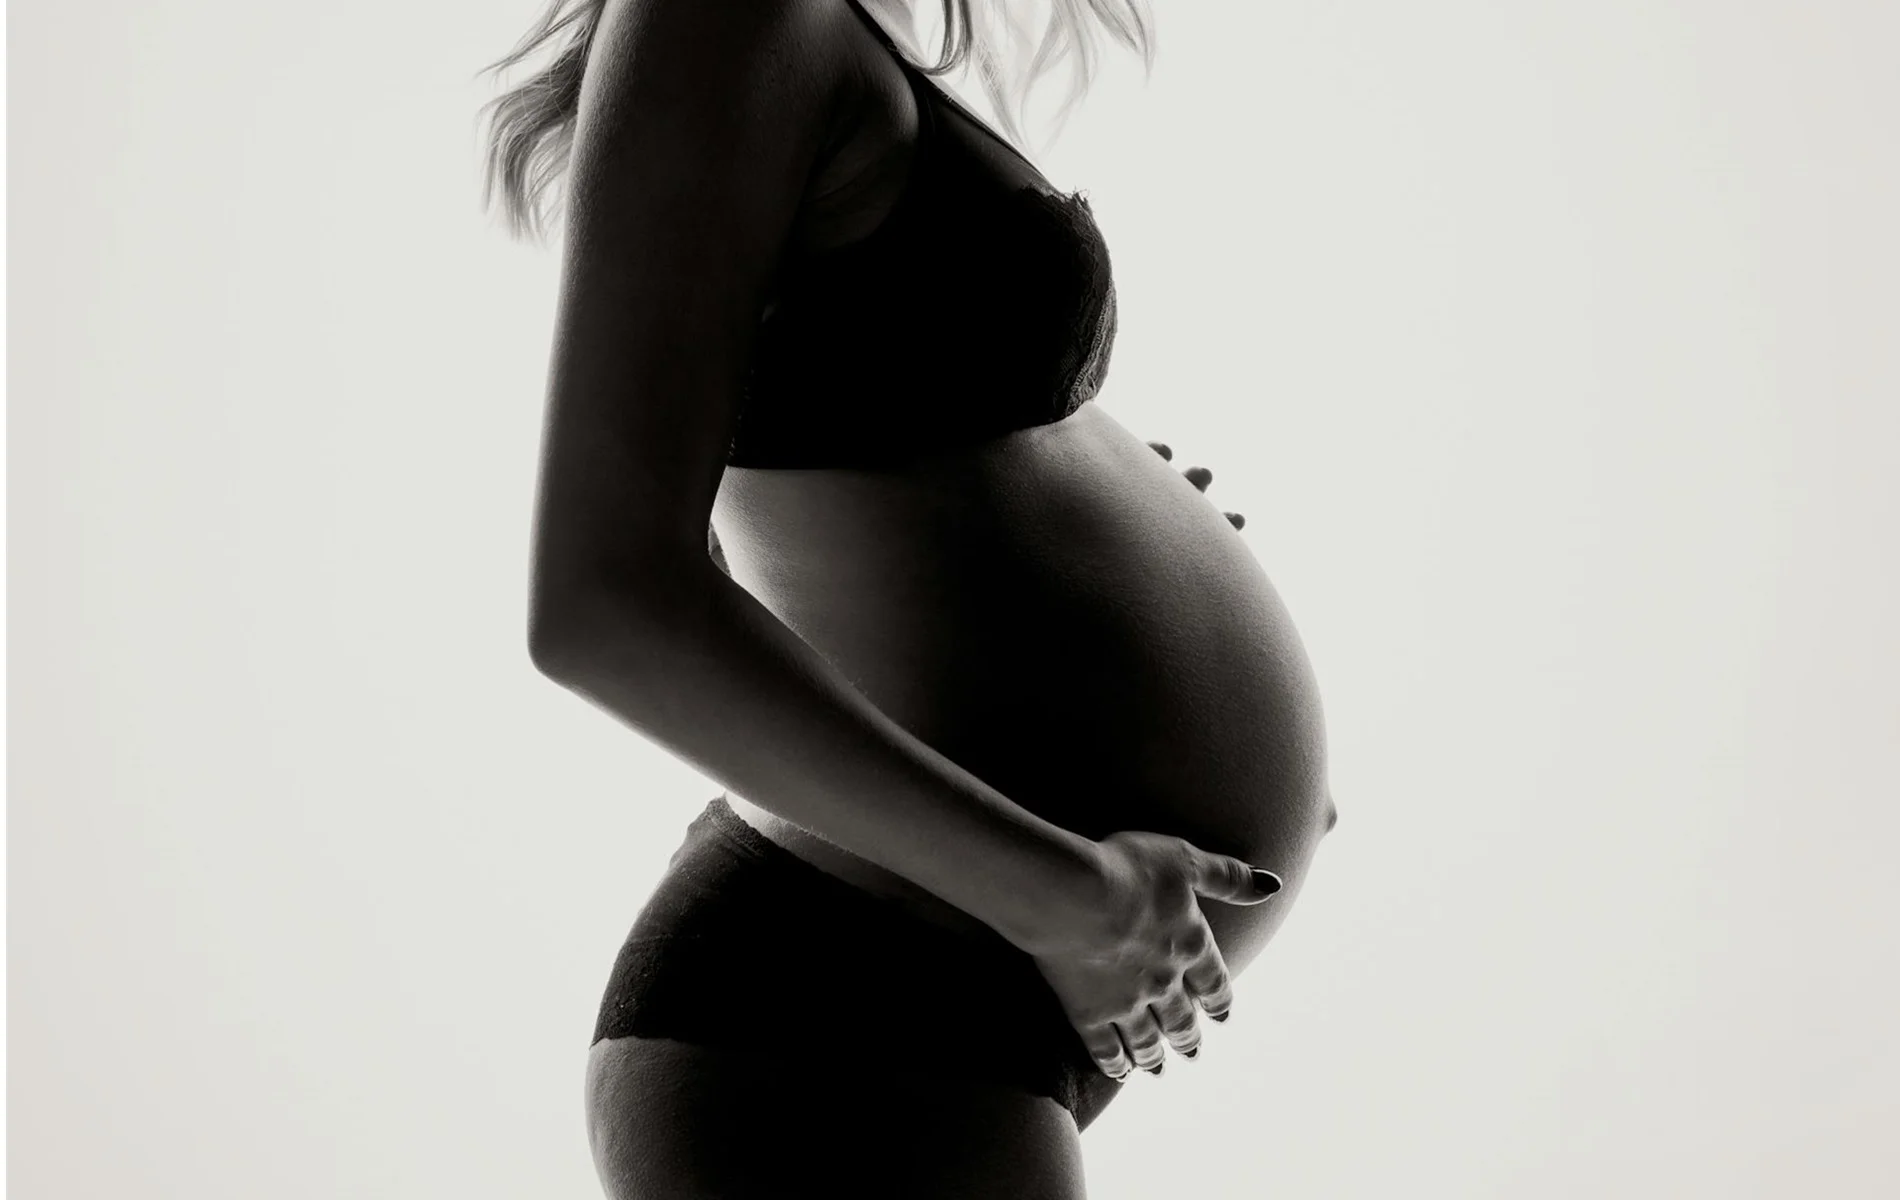 me puedo quedar embarazada despues de un aborto